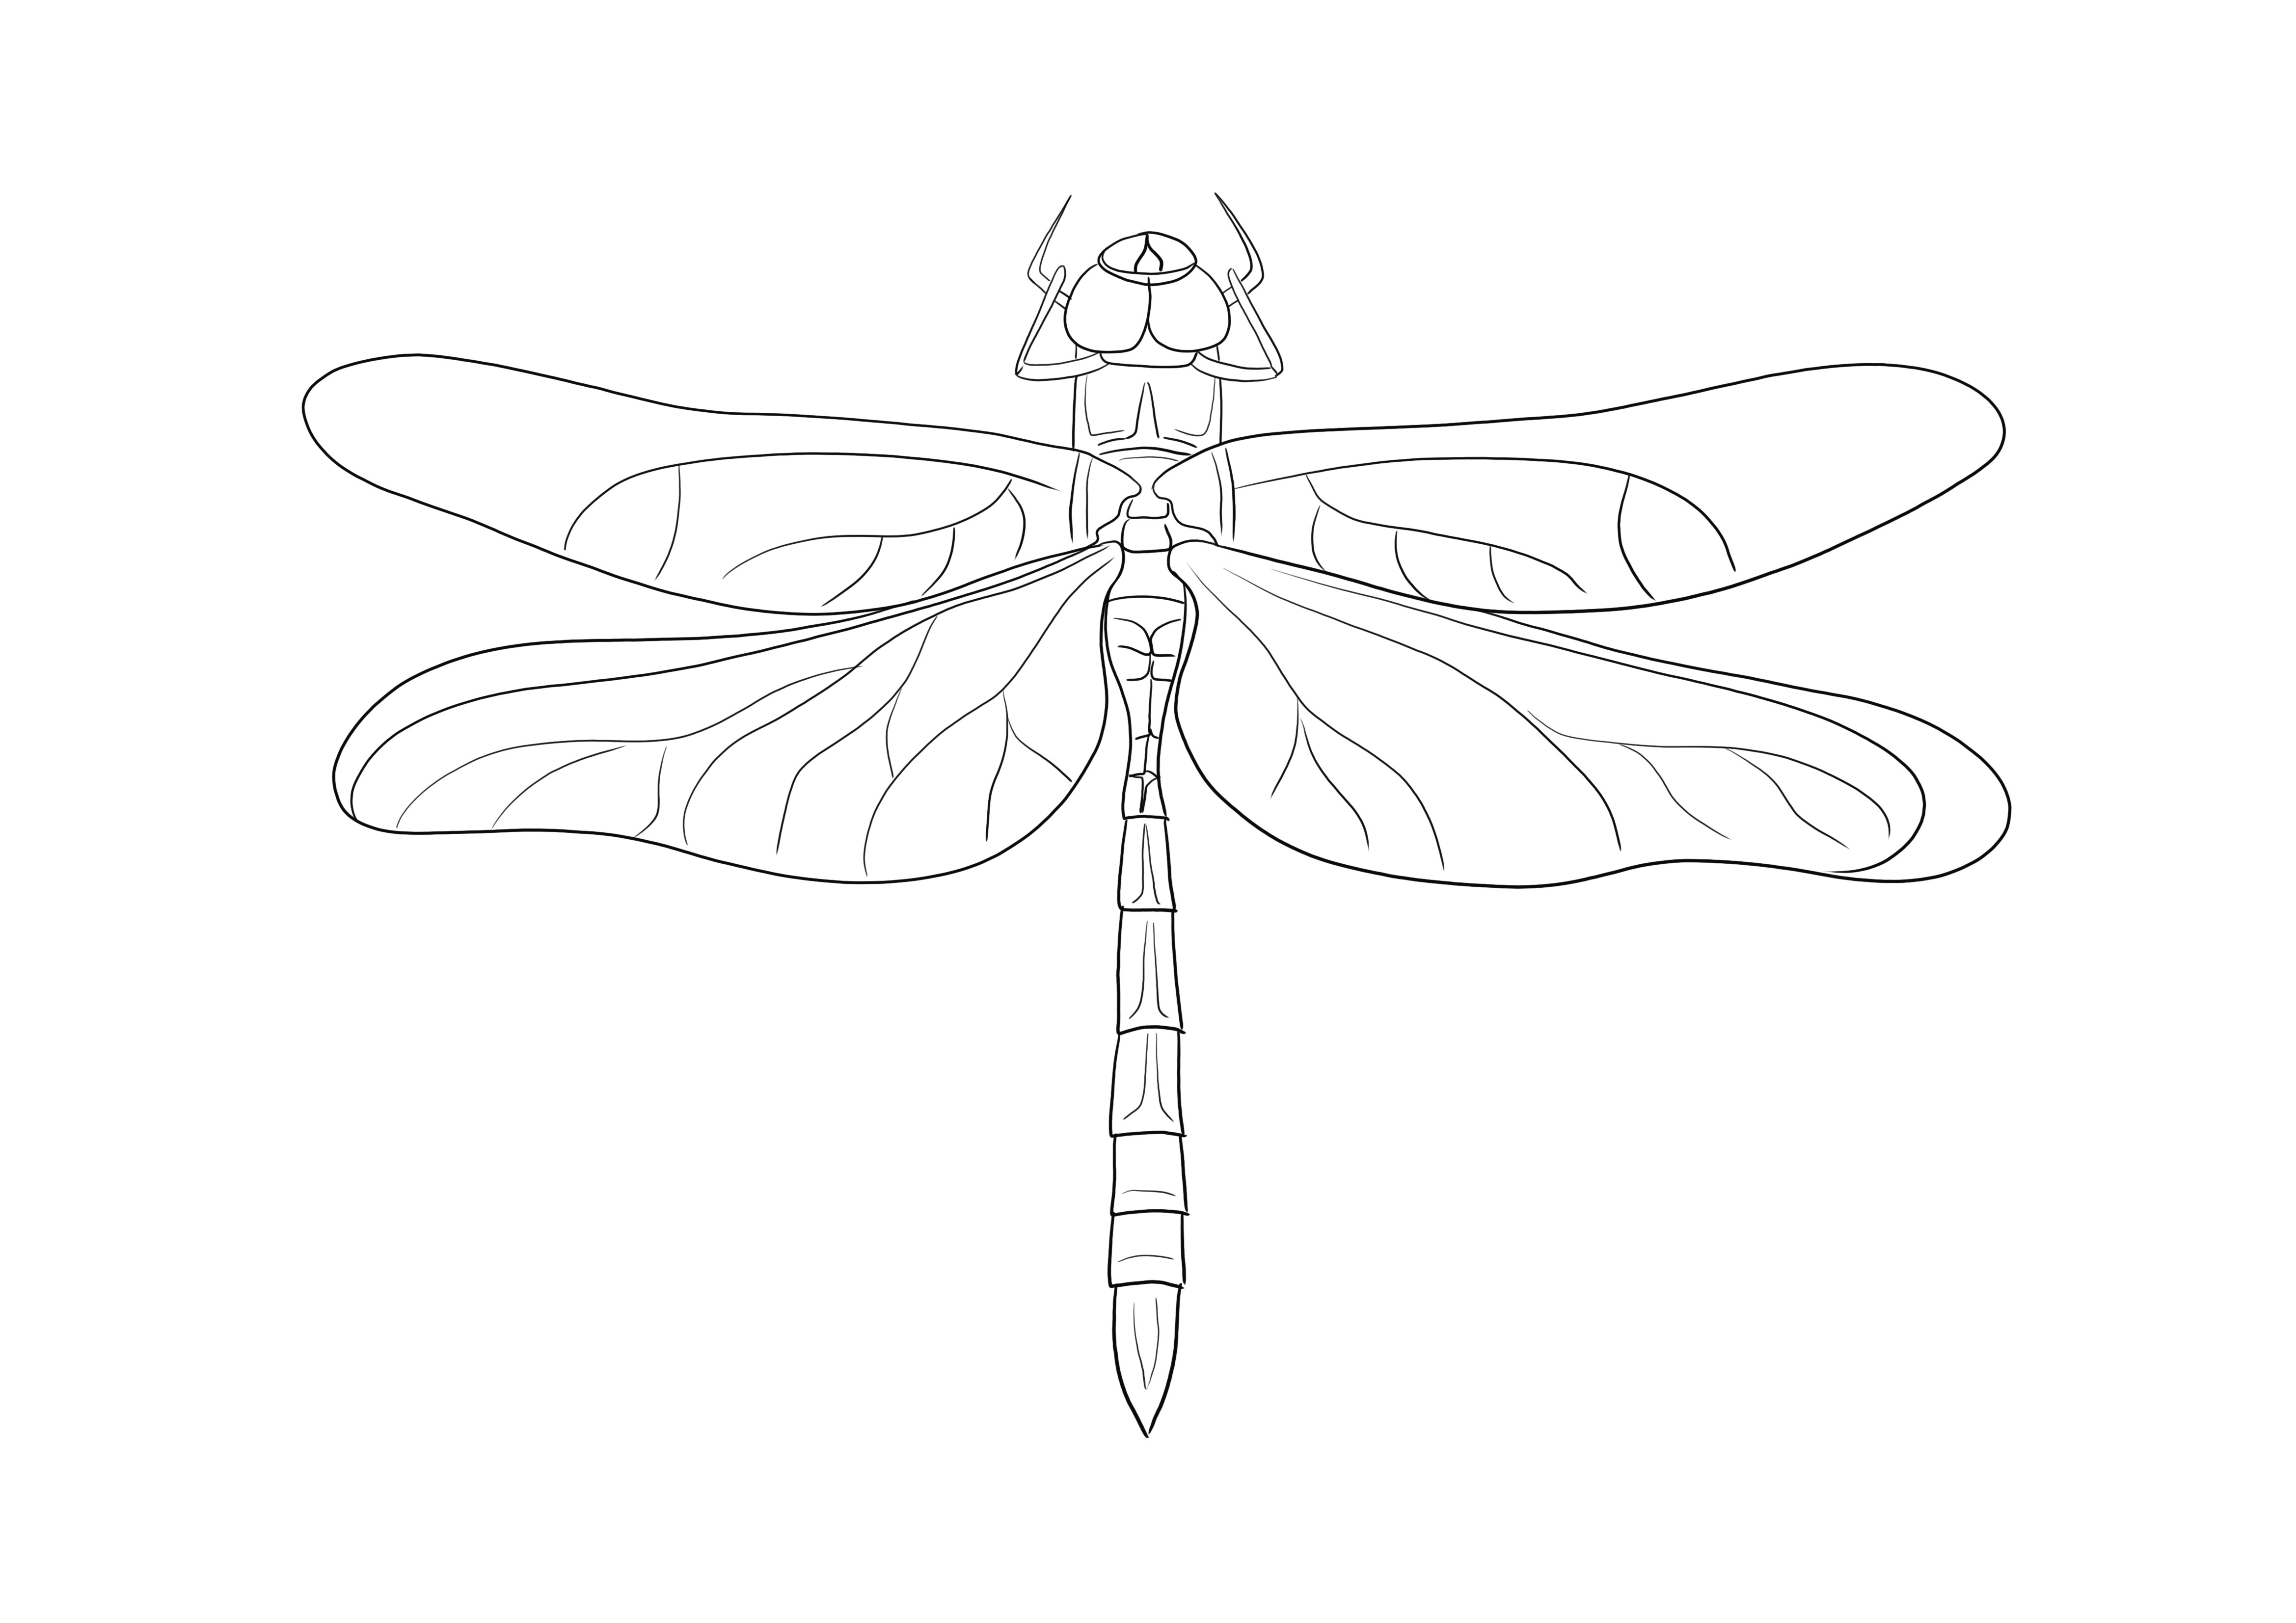 Ilmainen tulostaminen ja väritys Emperor Dragonfly -helppo tapa oppia hyönteismaailmasta